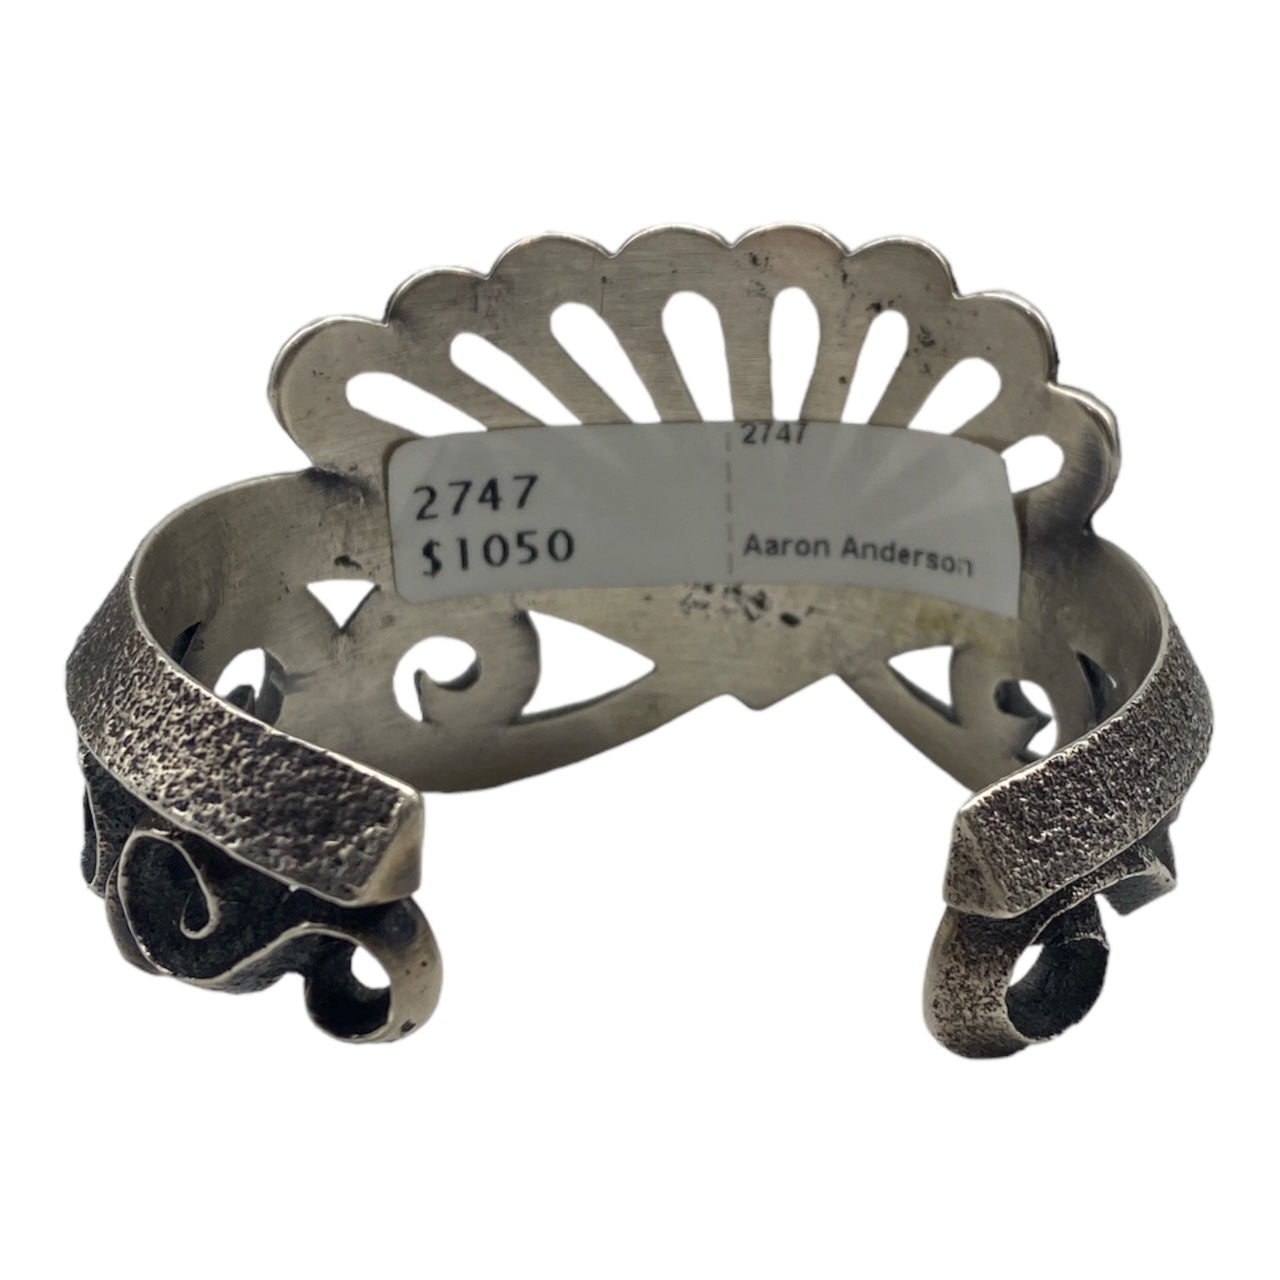 Aaron Anderson navajo bracelet for sale, jewelry for sale telluride, navajo jewelry for sale 